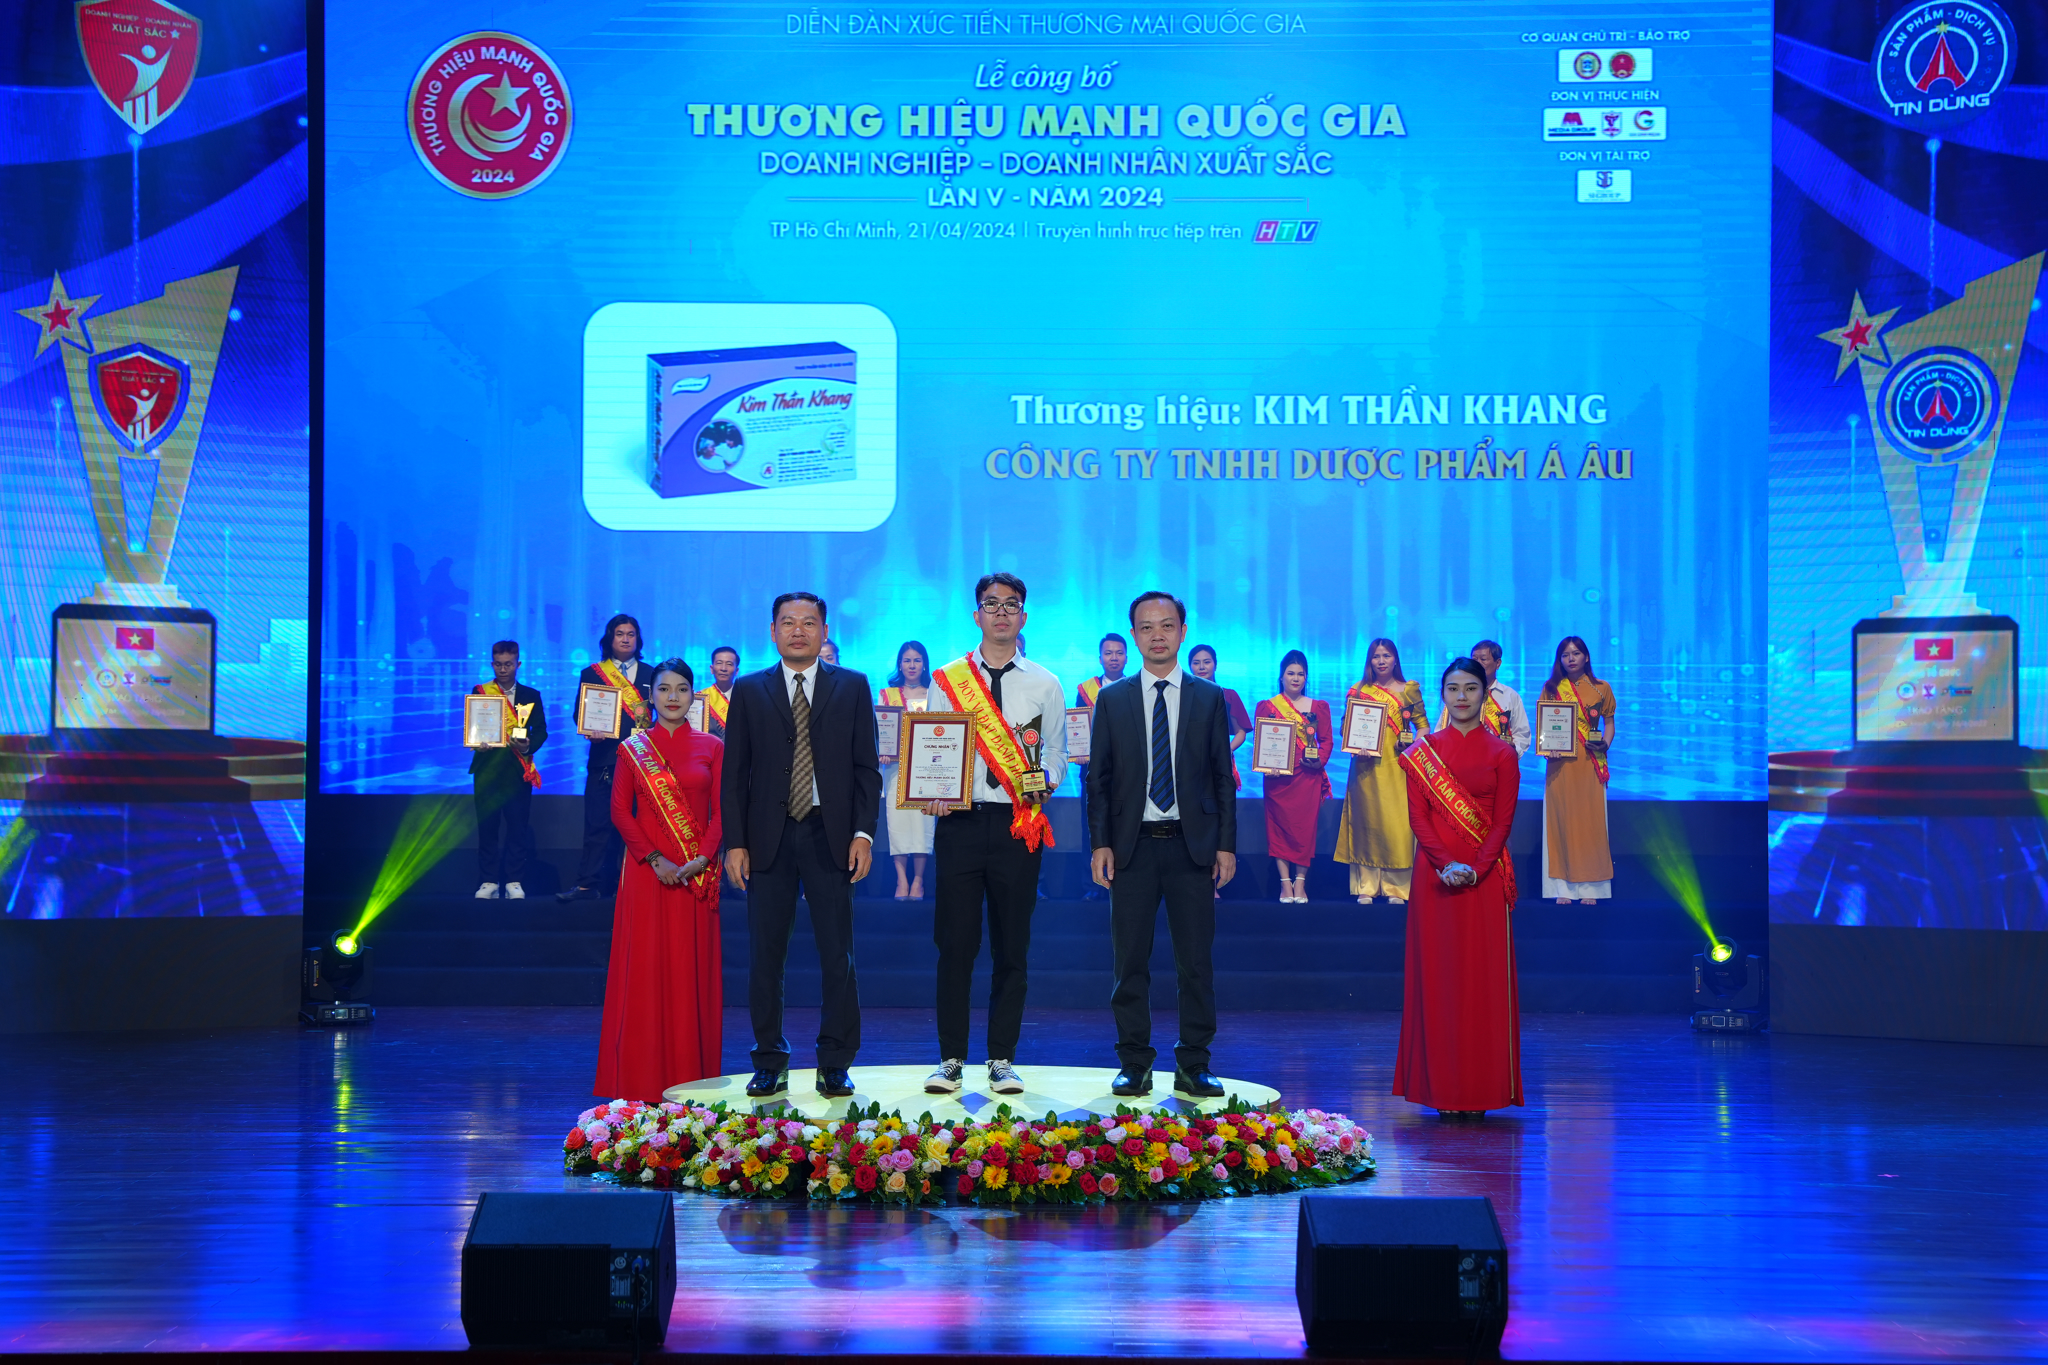 Đại diện nhãn hàng Kim Thần Khang nhận giải thưởng Top 10 Thương hiệu mạnh Quốc gia năm 2024